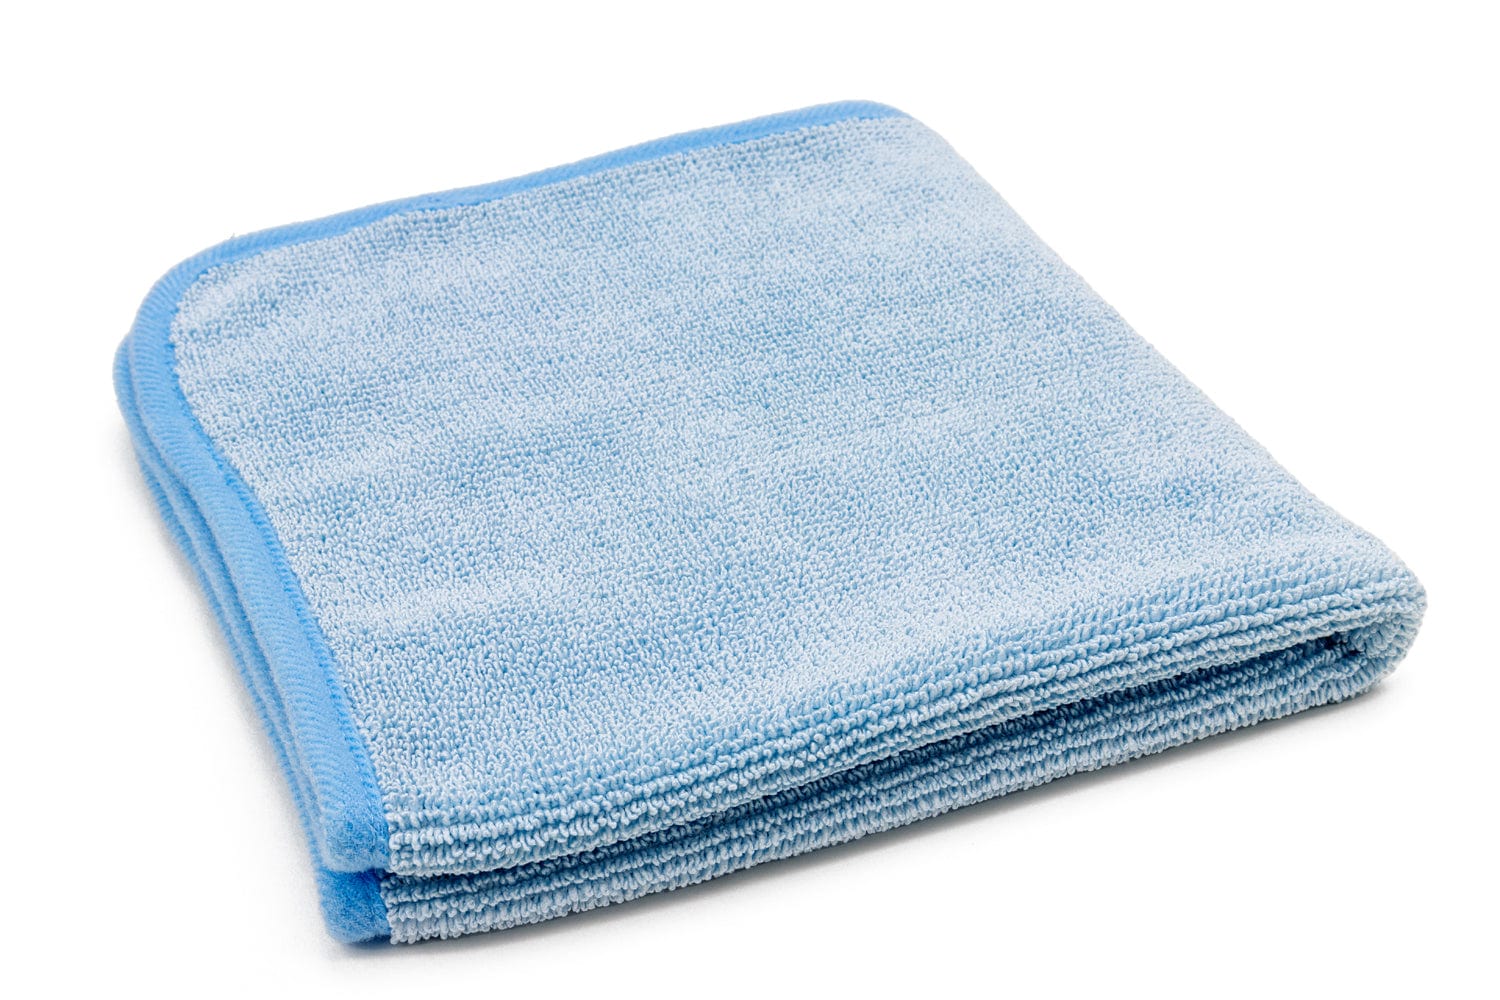 Autofiber Towel Blue [Korean Twist] Microfiber Detailing Towels (16 in. x 16 in. 600 gsm) 3 pack